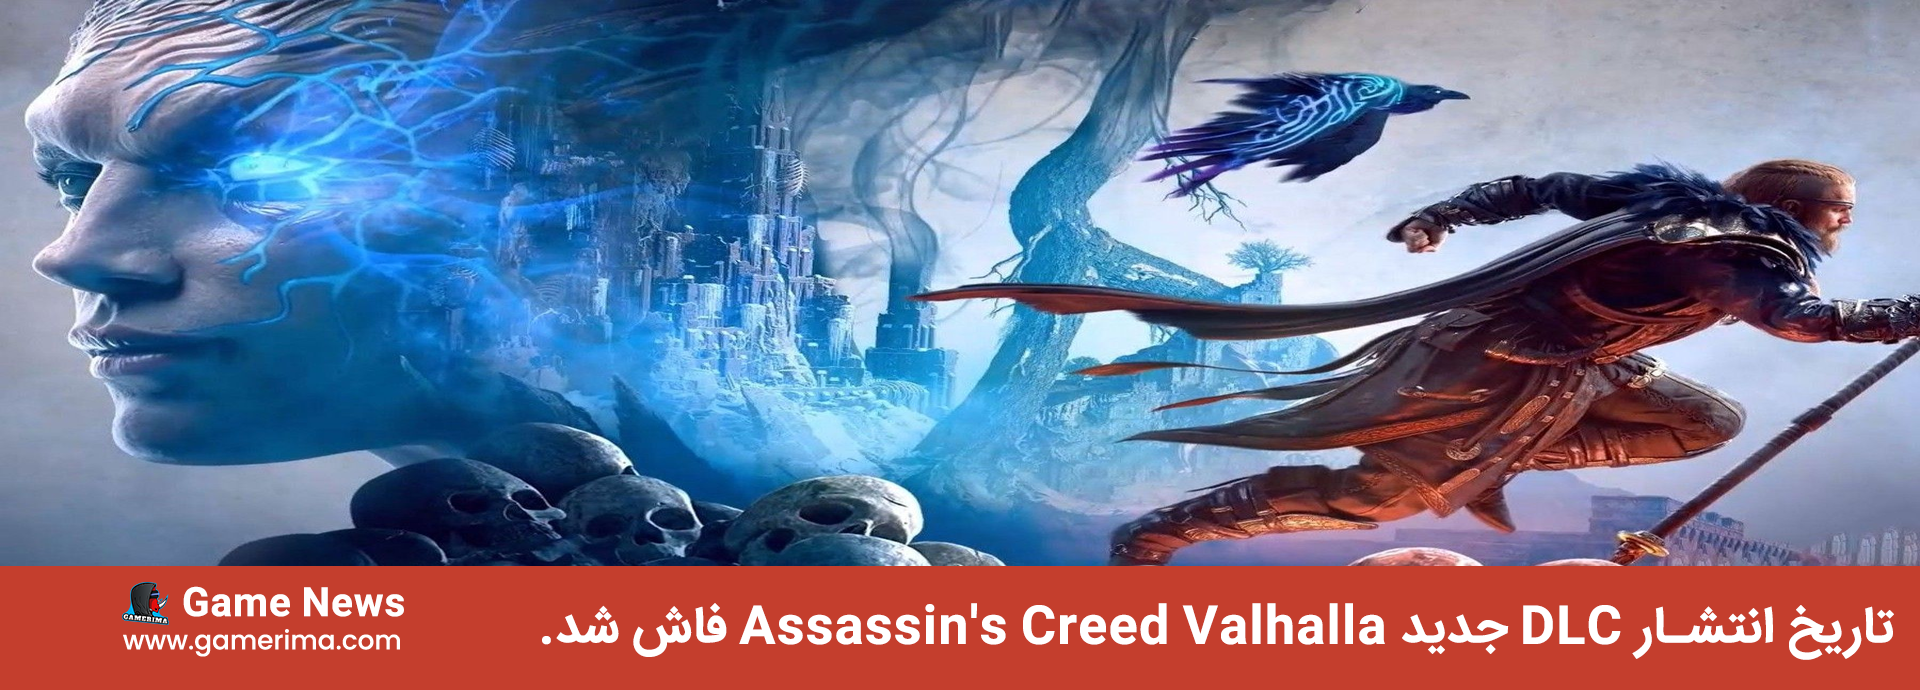 تاریخ انتشار DLC جدید Assassin's Creed Valhalla فاش شد.2022